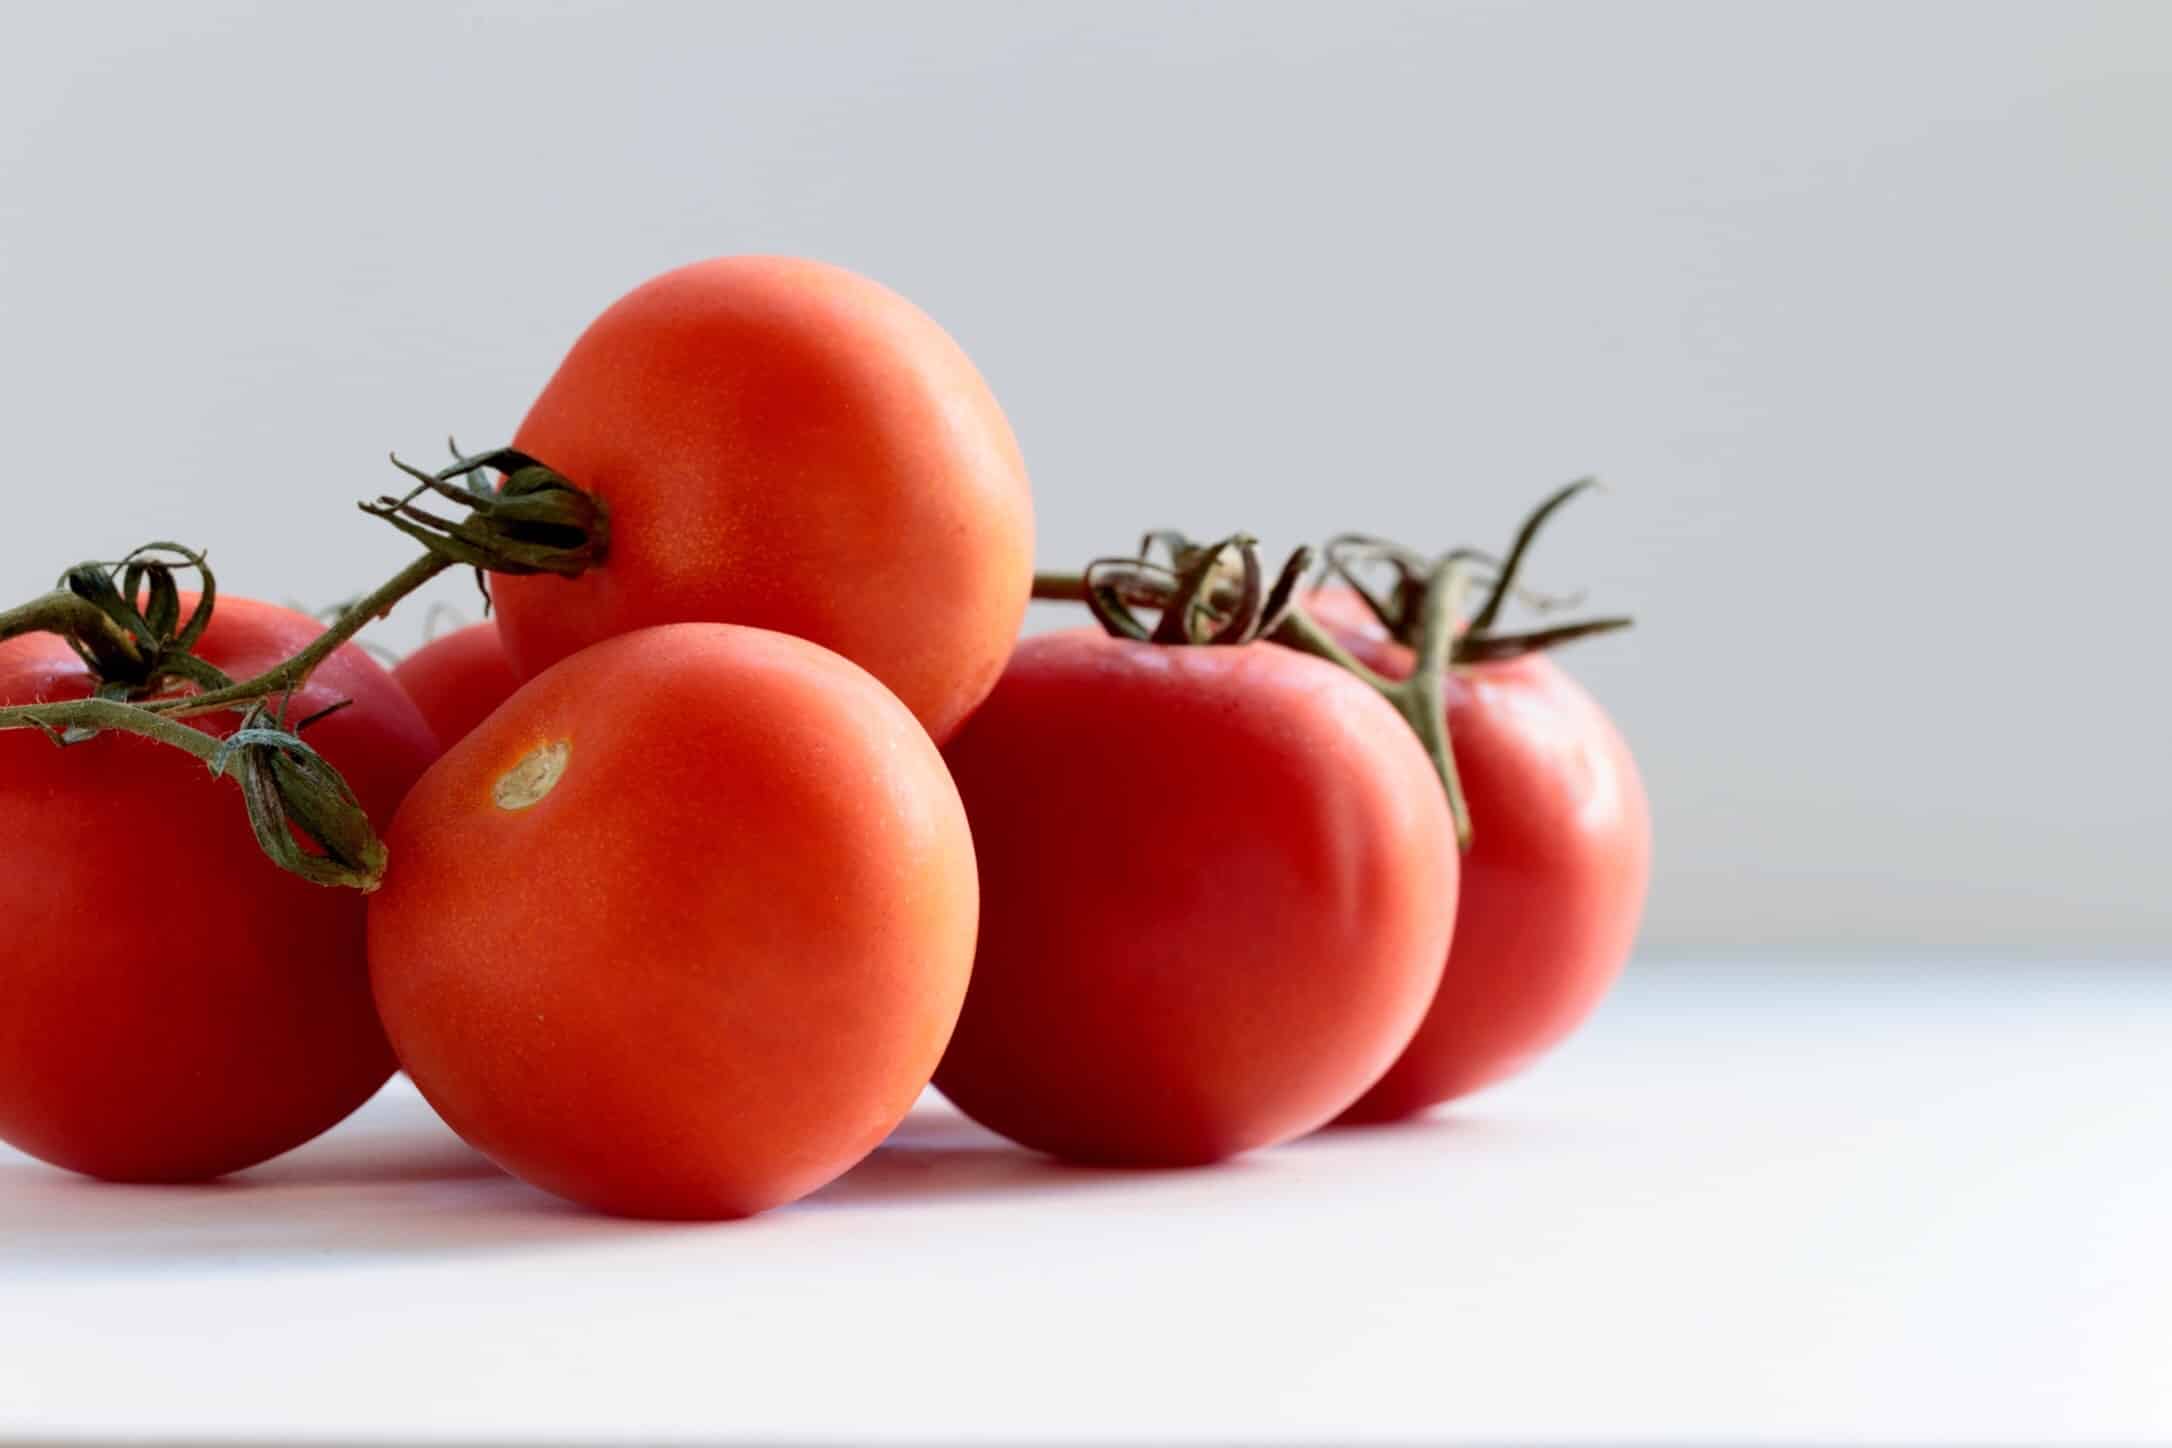 paradajky - vince lee p6KMIFzWwy8 unsplash - Paradajky &#8211; ovocie či zelenina?